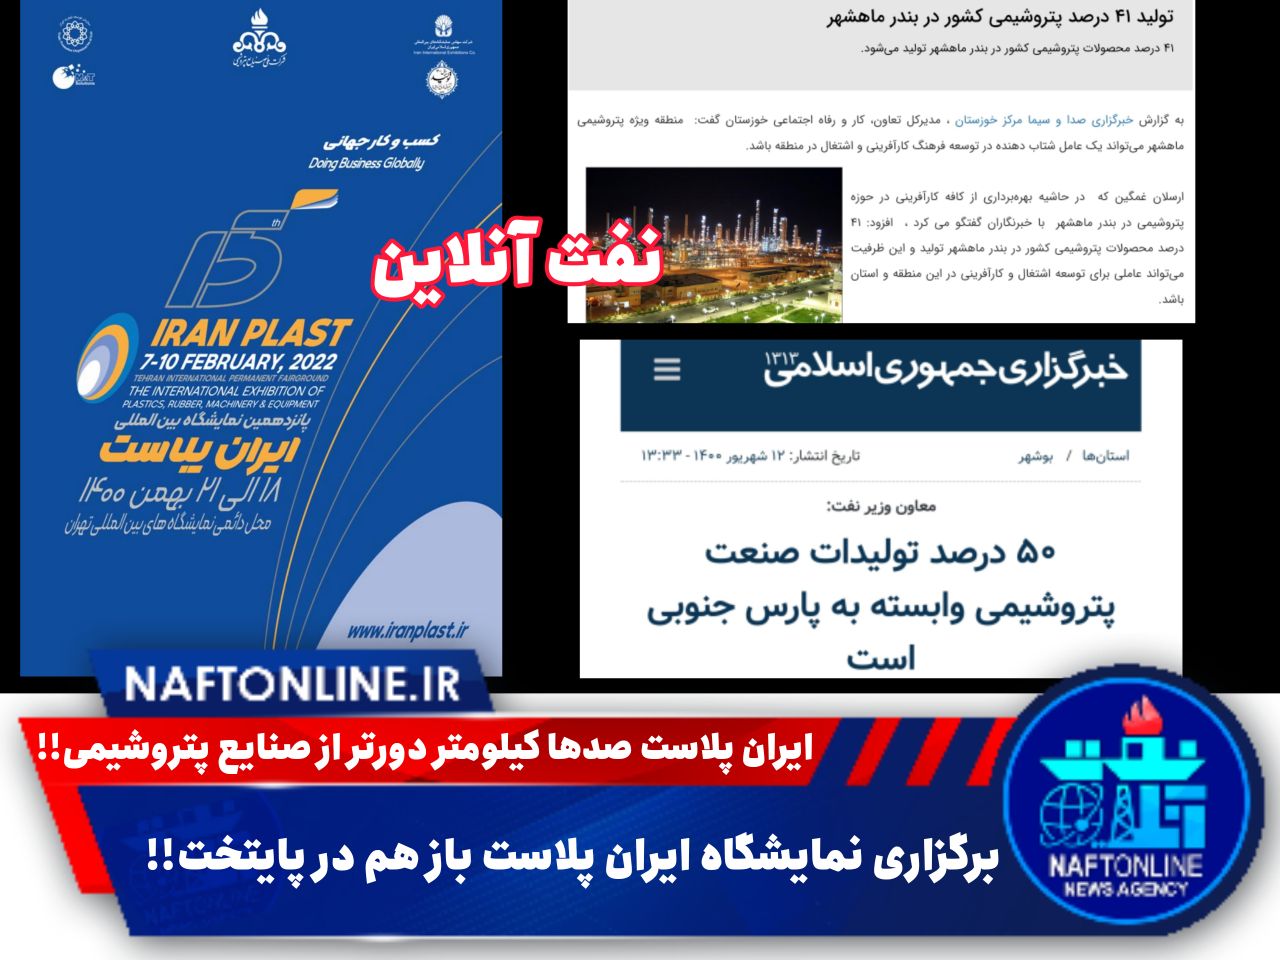 نمایشگاه ایران پلاست | نفت آنلاین